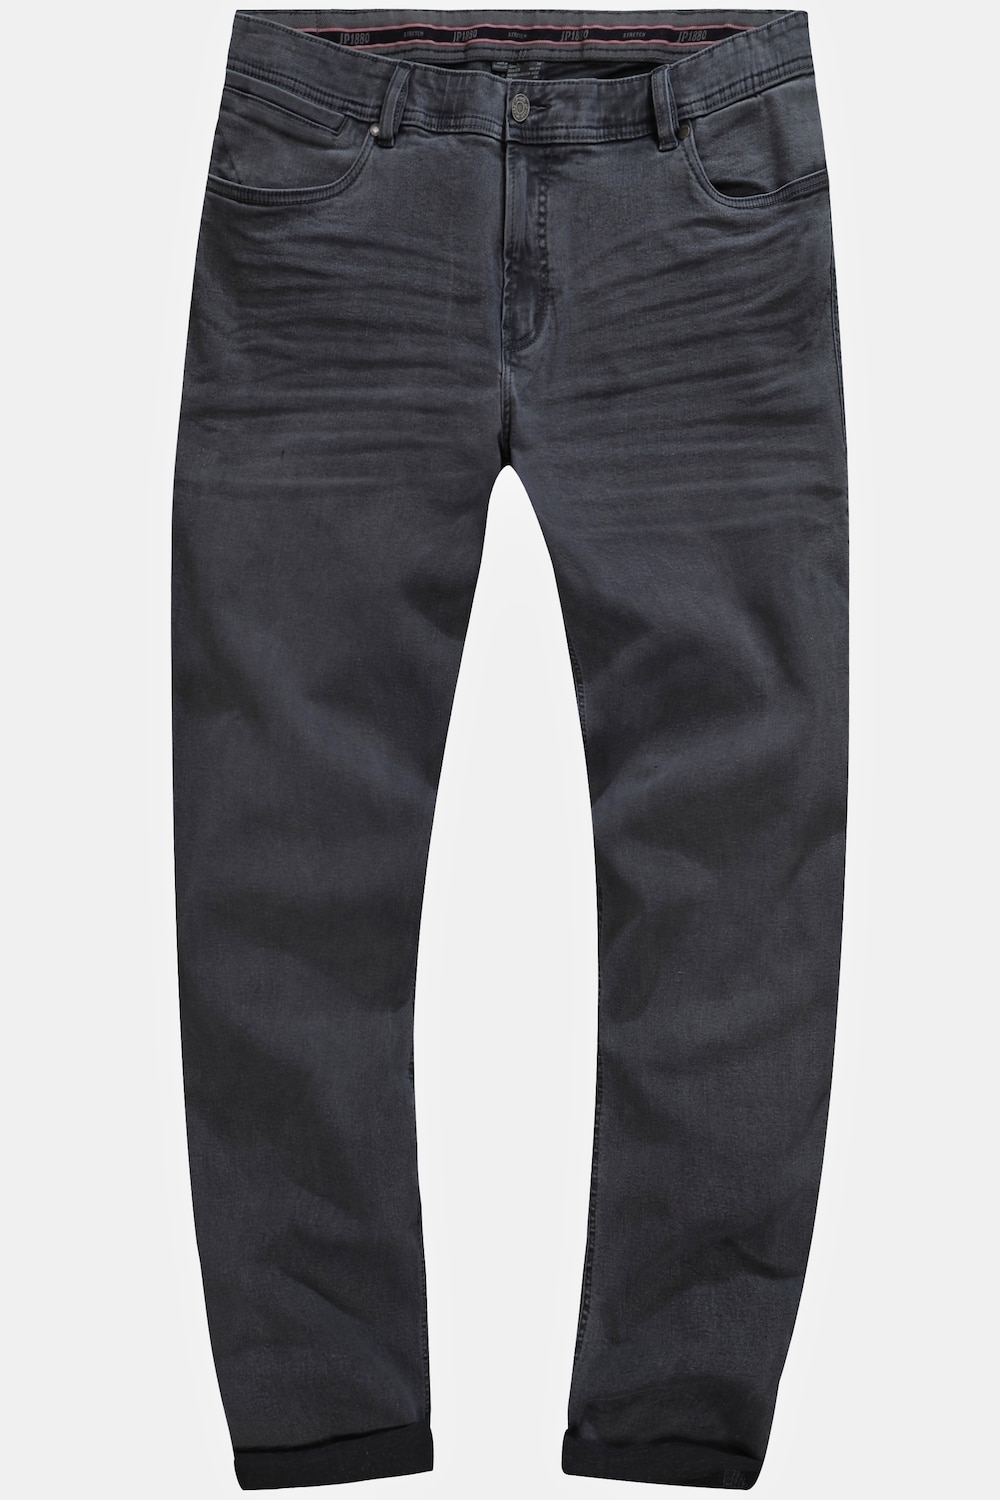 grandes tailles jean ventre confort, hommes, gris, taille: 35, coton, jp1880